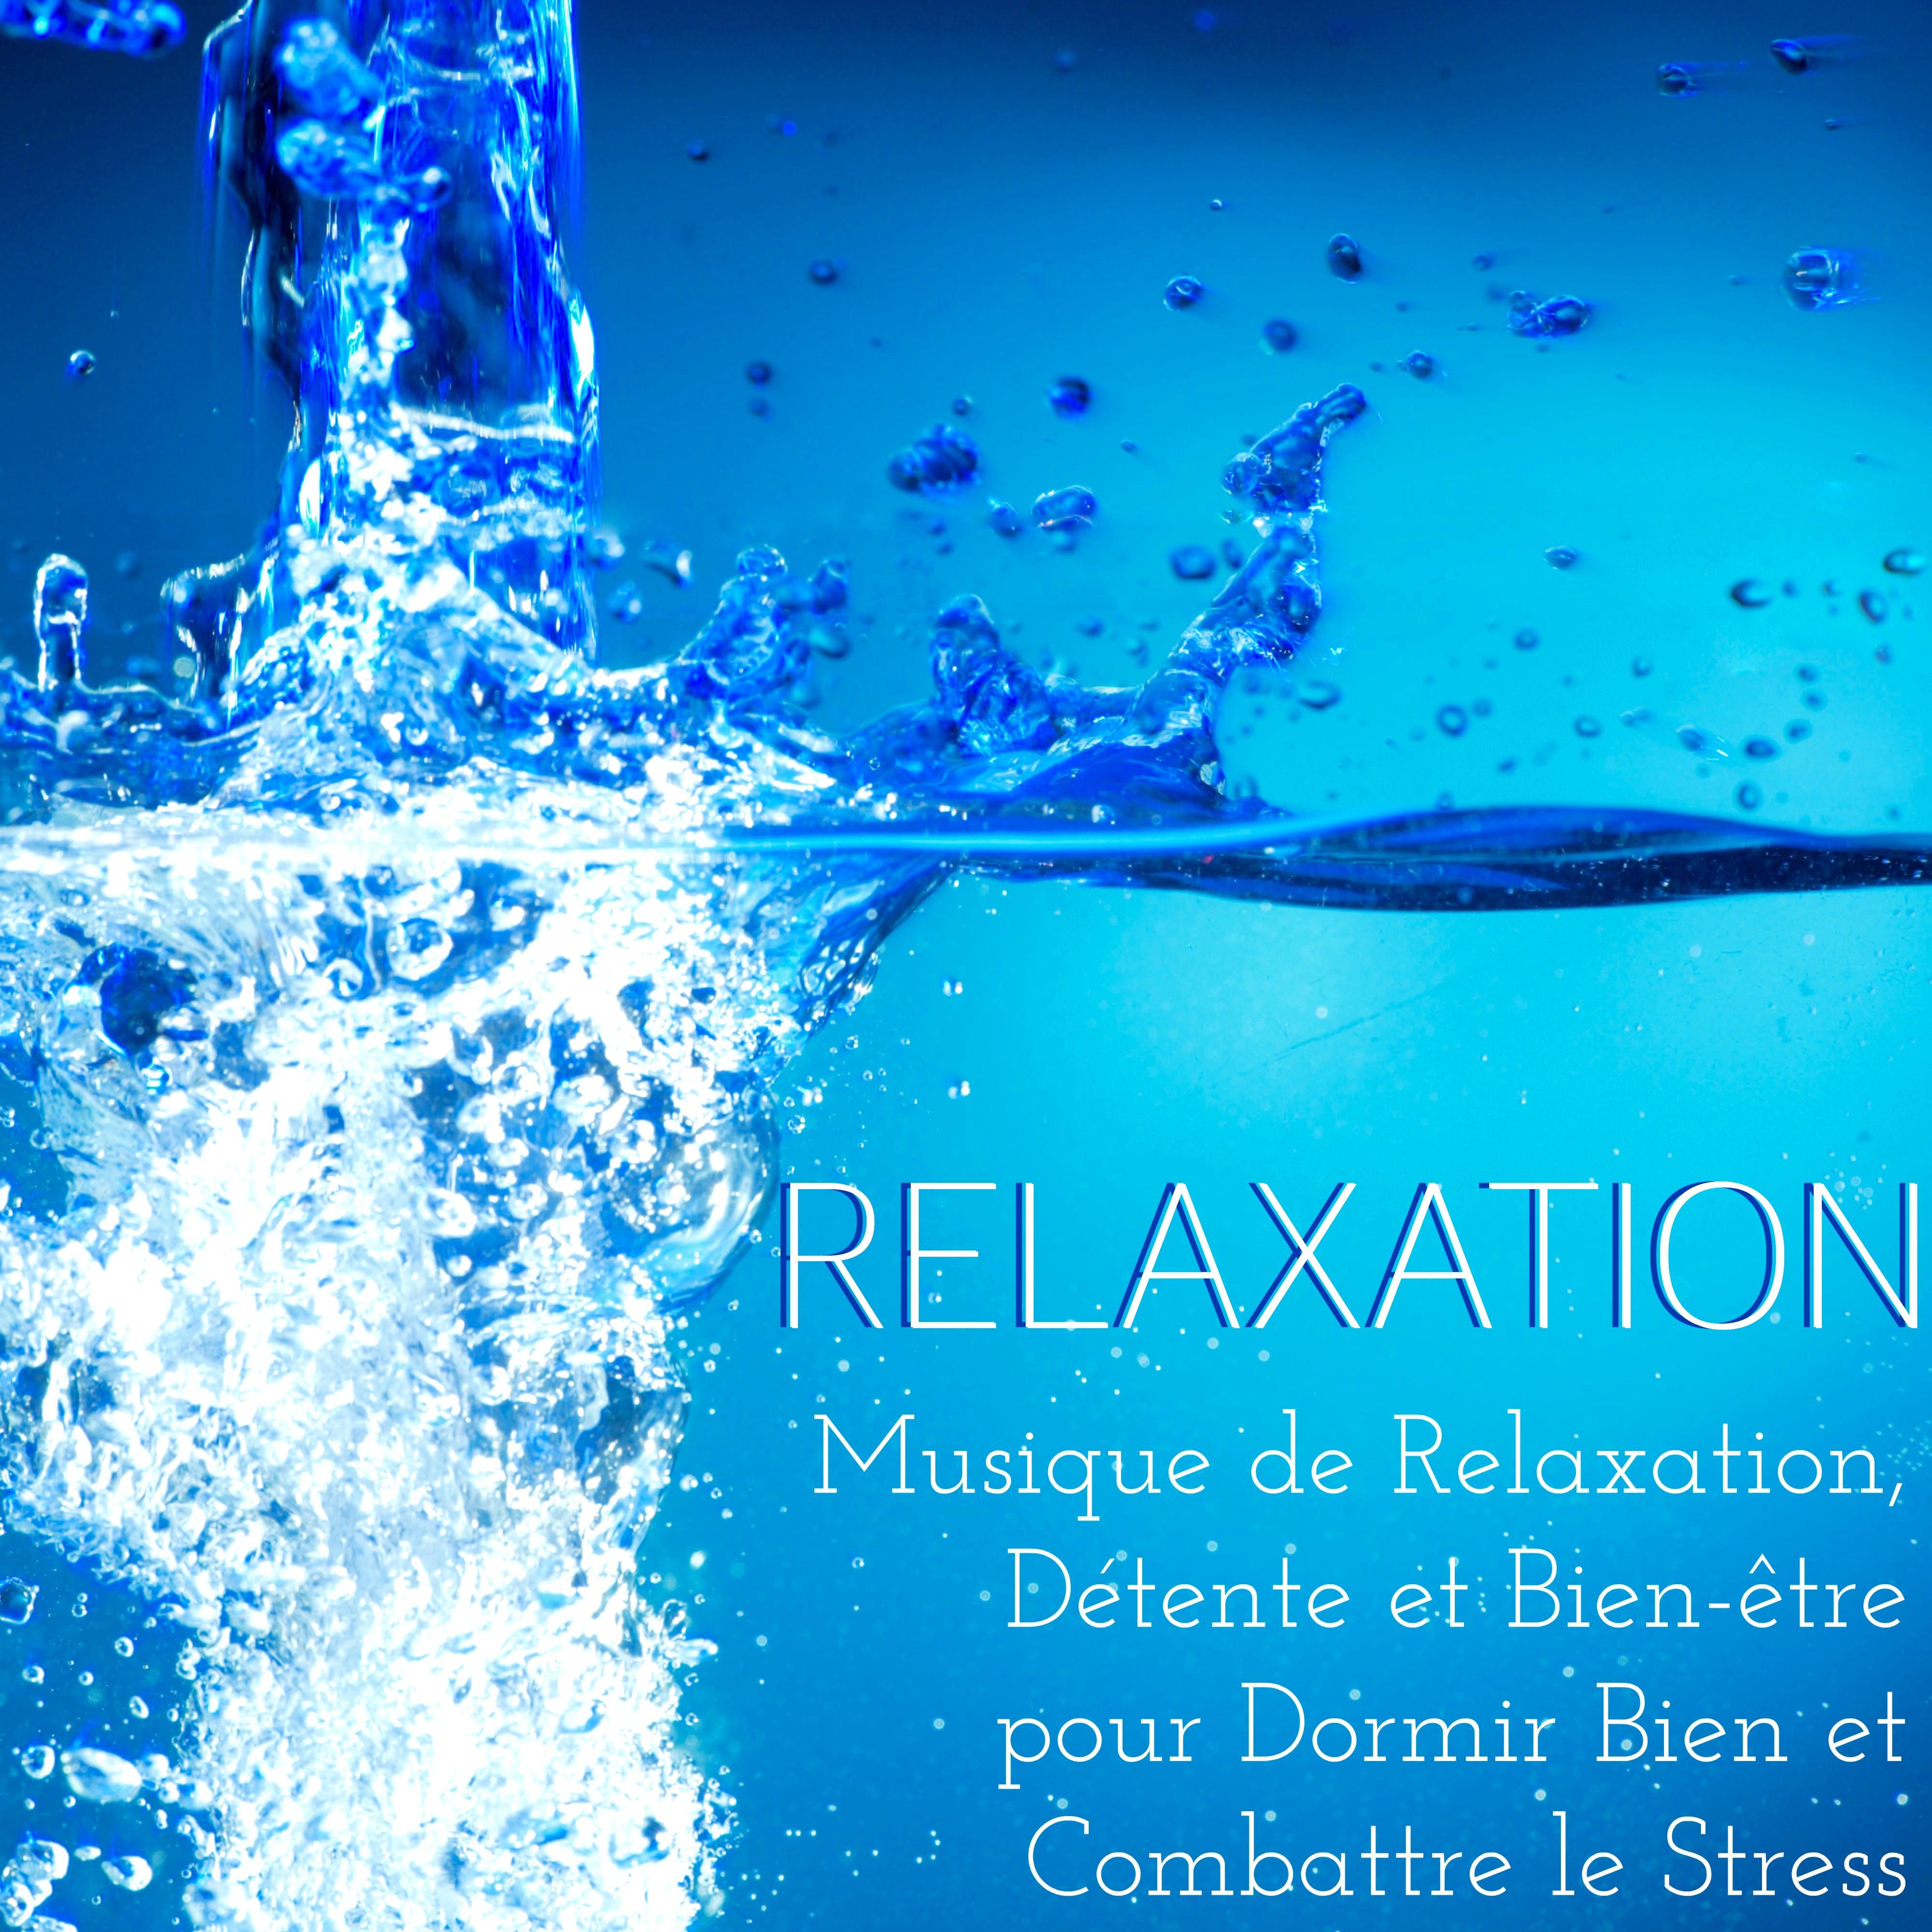 Relaxation: Musique de Relaxation, Détente et Bien-être pour Dormir Bien et Combattre le Stress